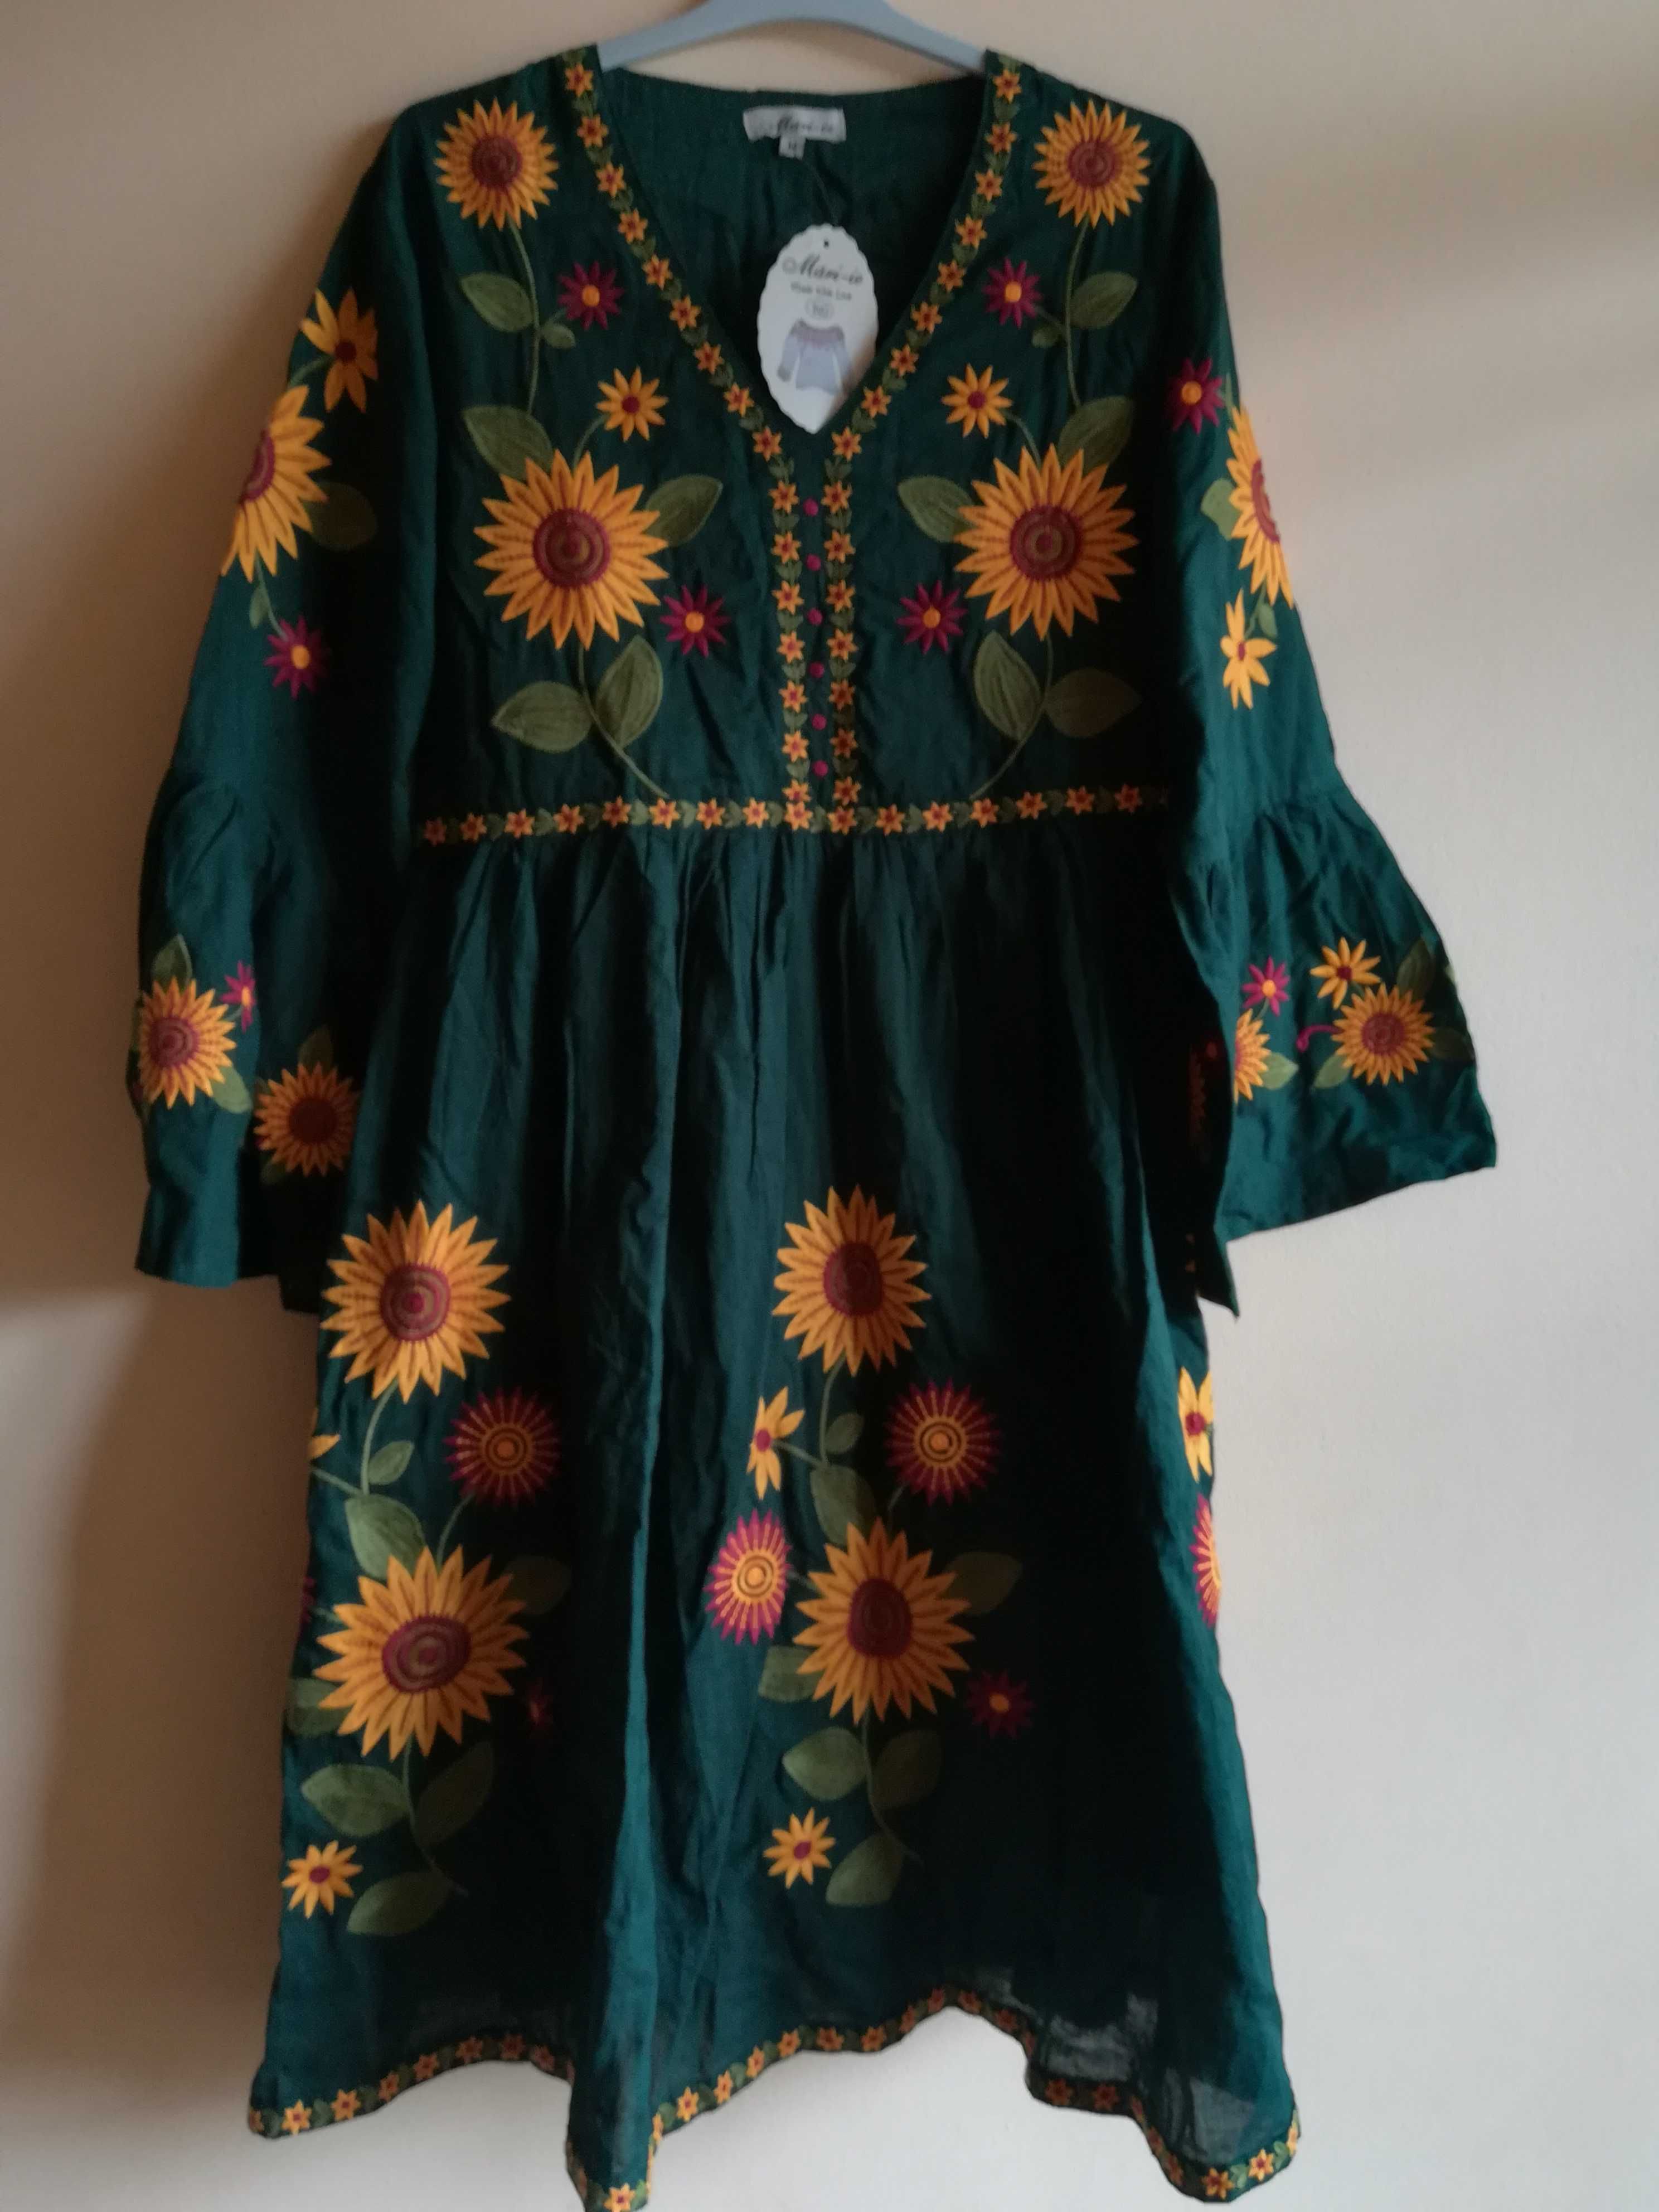 curier gratuit: rochie/tunică verde nouă Mări-ie, floarea soarelui, M